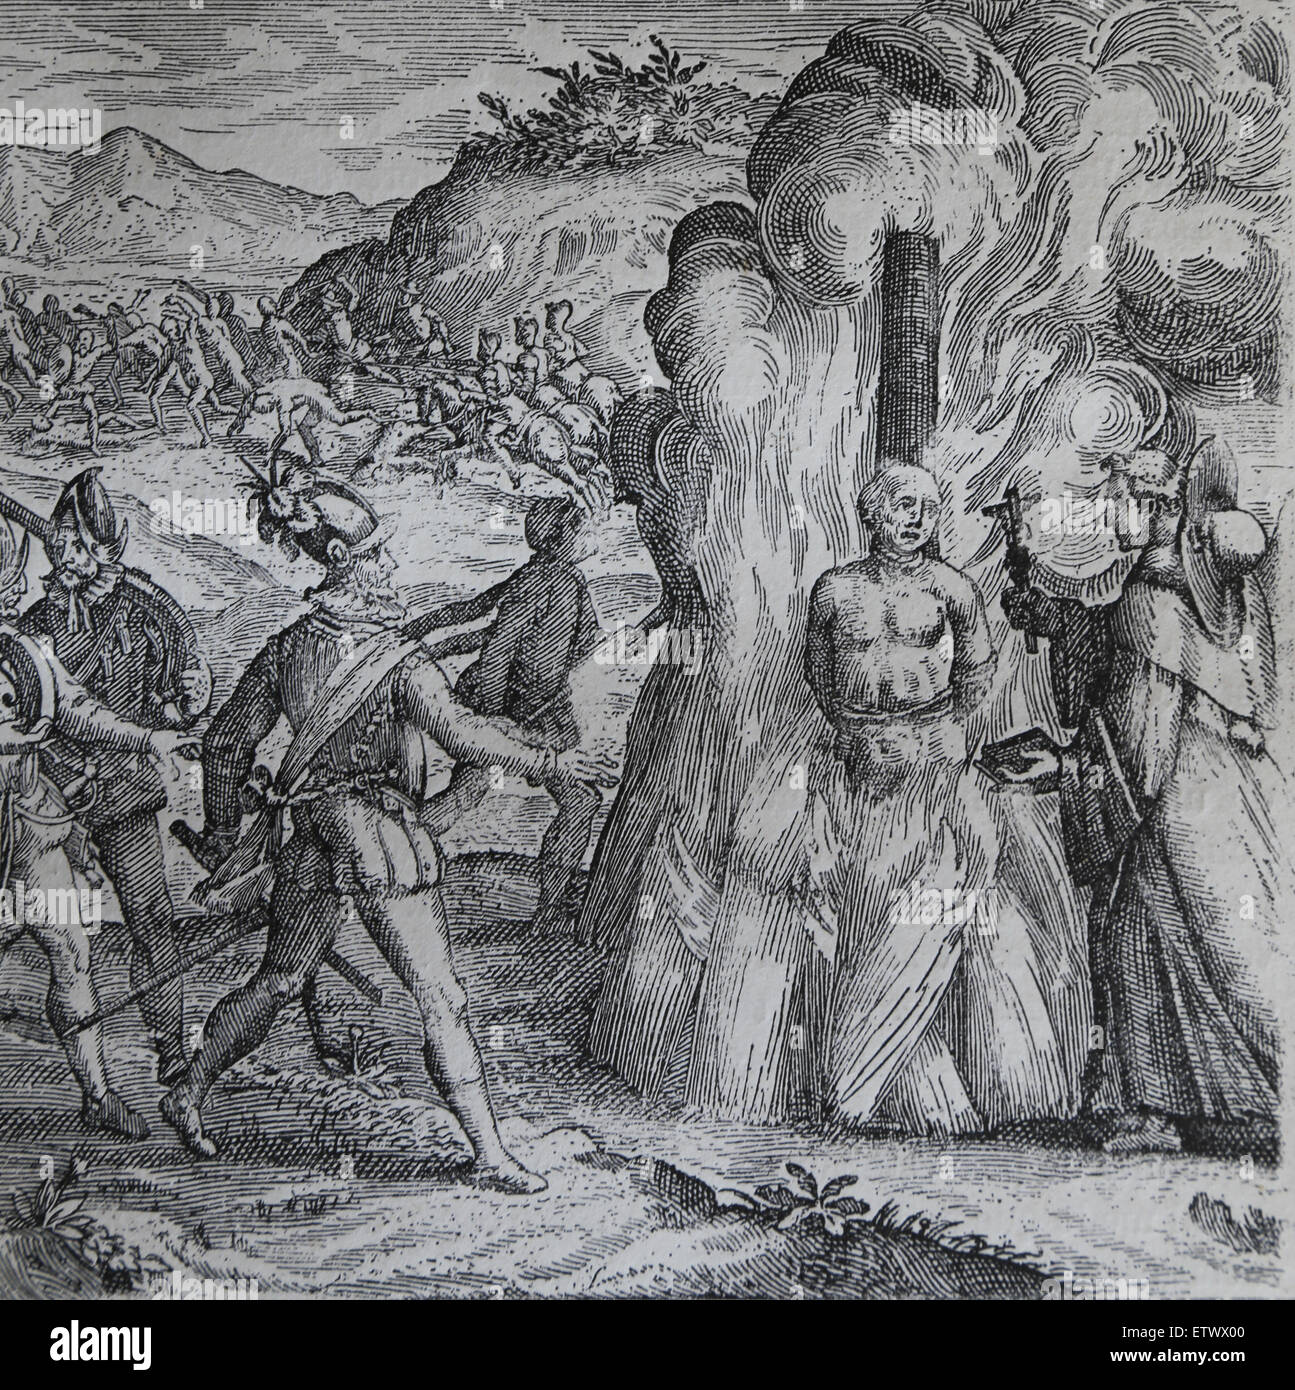 Bartolomé de Las Casas, Zerstörung von Indien. Taino Häuptling Hatuey von spanischen Soldaten verbrannt wird. Stockfoto